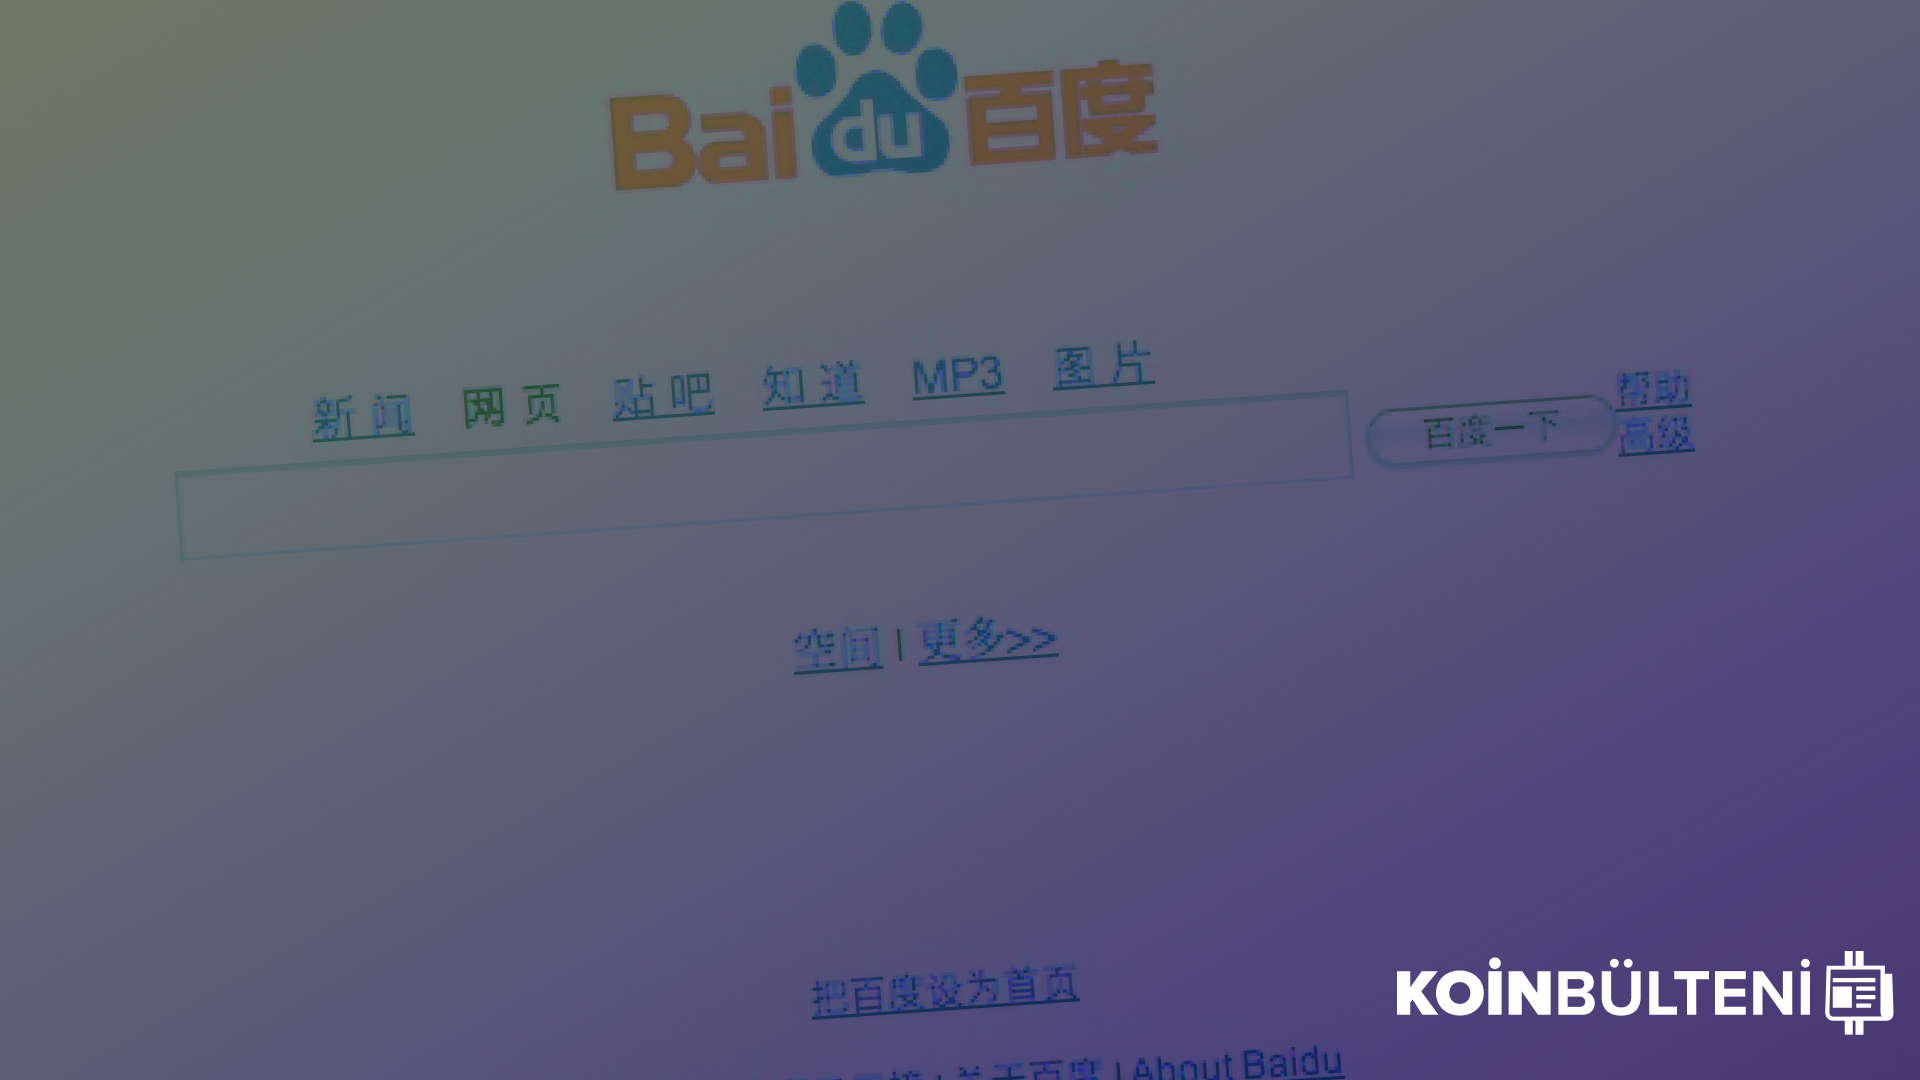 cin-regulasyon-bitcoin-binance-kripto-para-borsa-baidu-weibo-son-dakika-haber